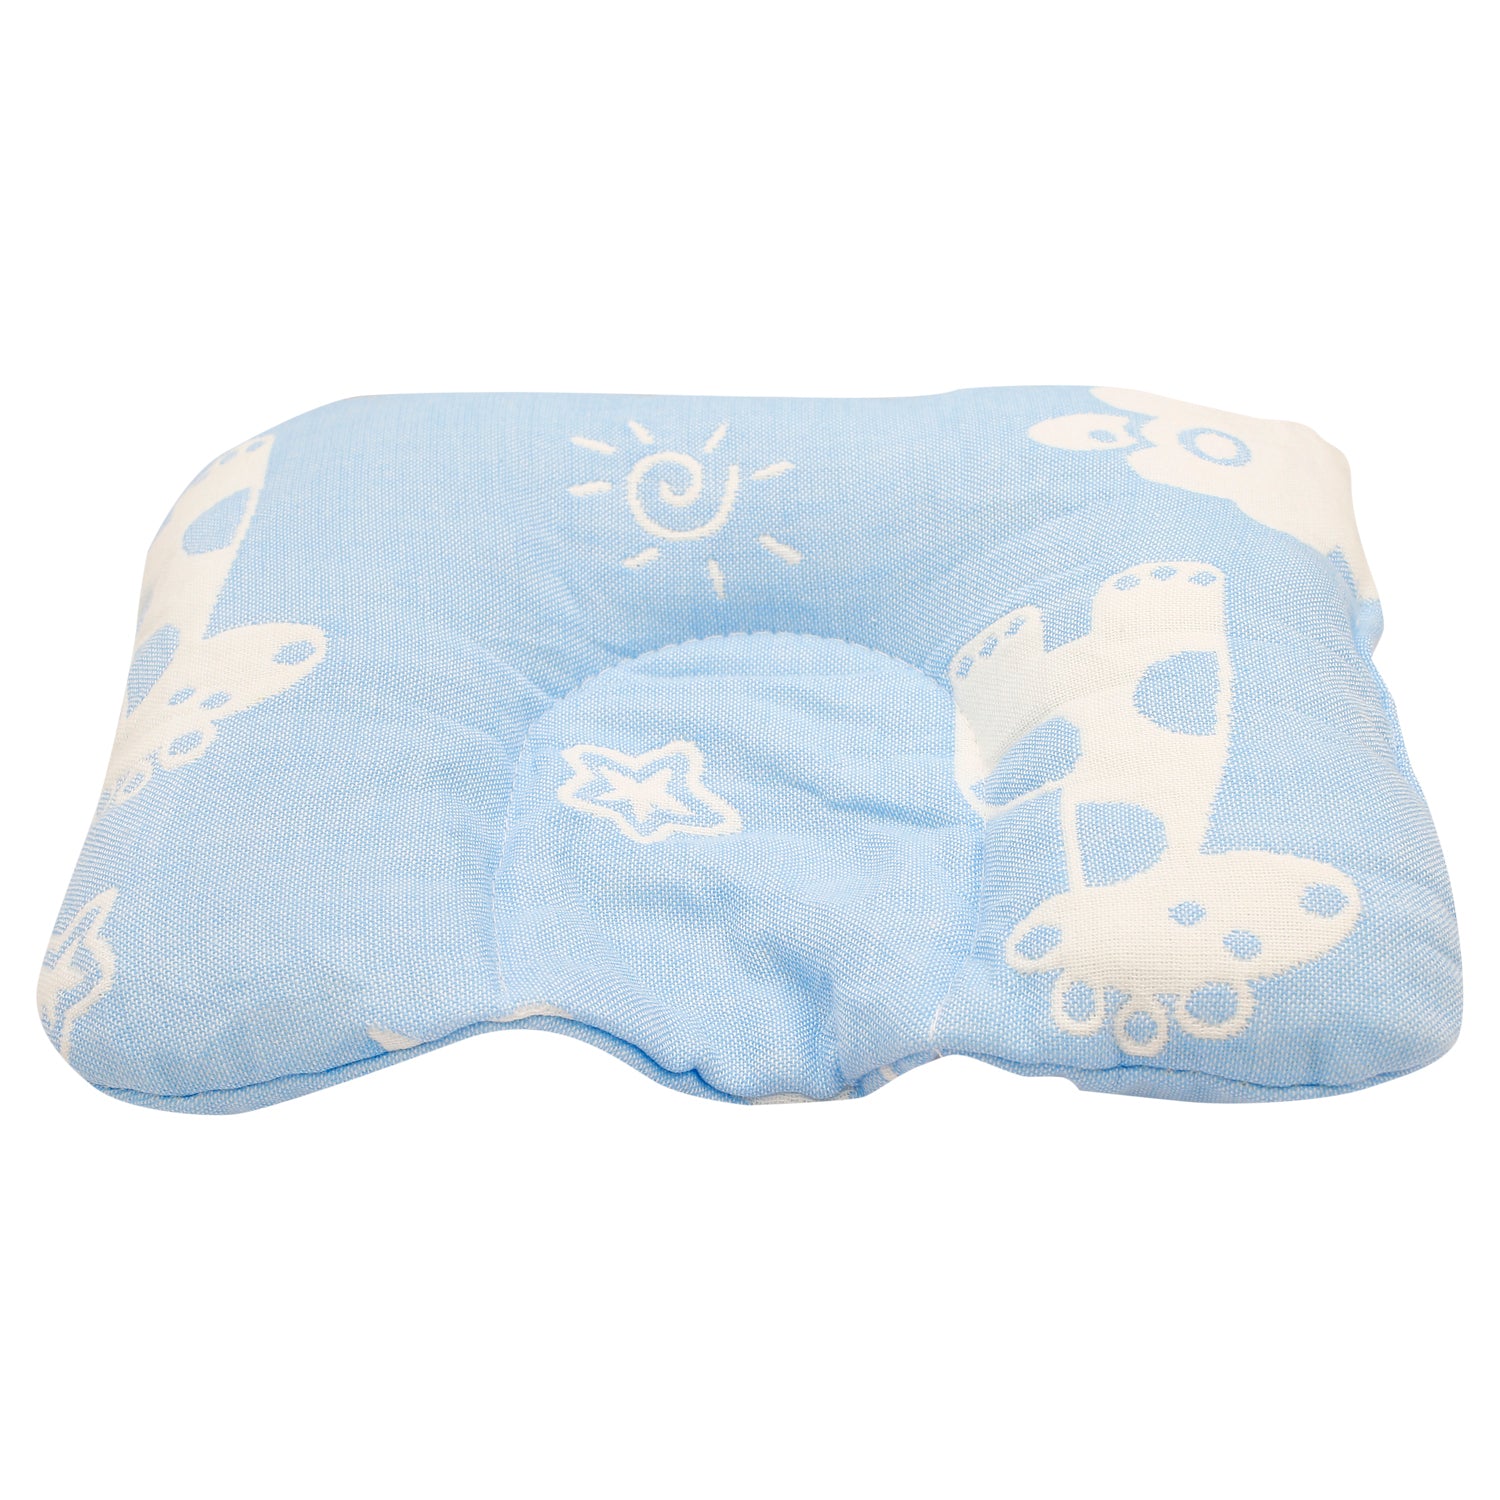 Giraffe Blue Baby Pillow